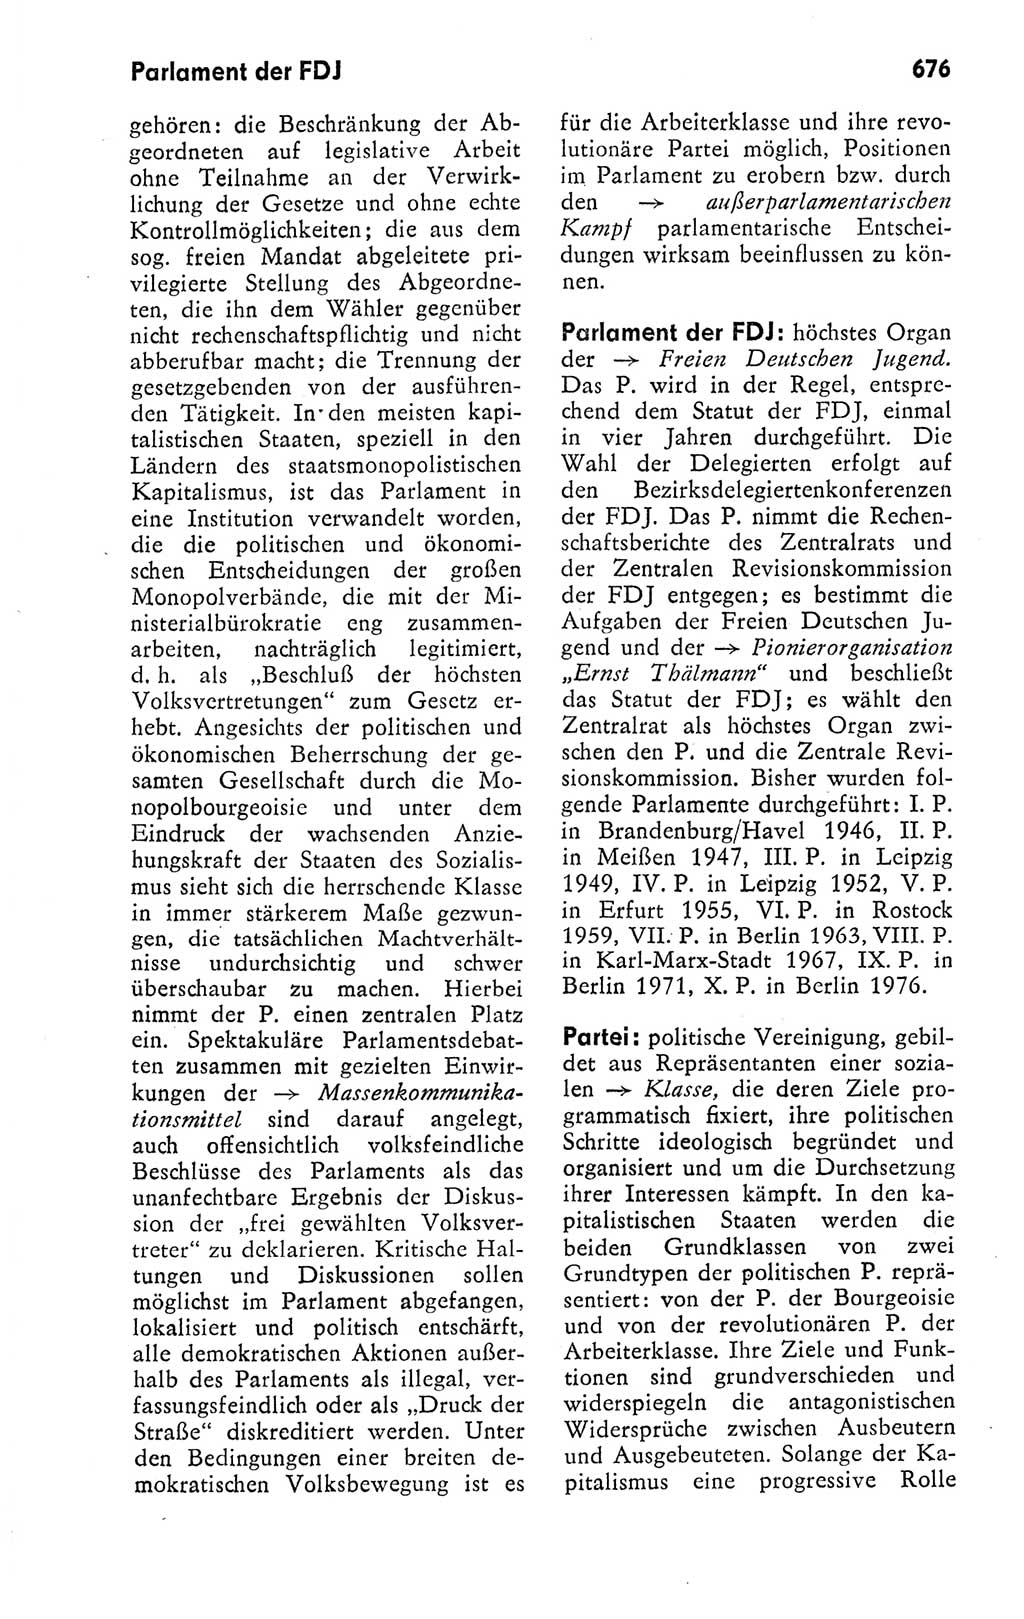 Kleines politisches Wörterbuch [Deutsche Demokratische Republik (DDR)] 1978, Seite 676 (Kl. pol. Wb. DDR 1978, S. 676)